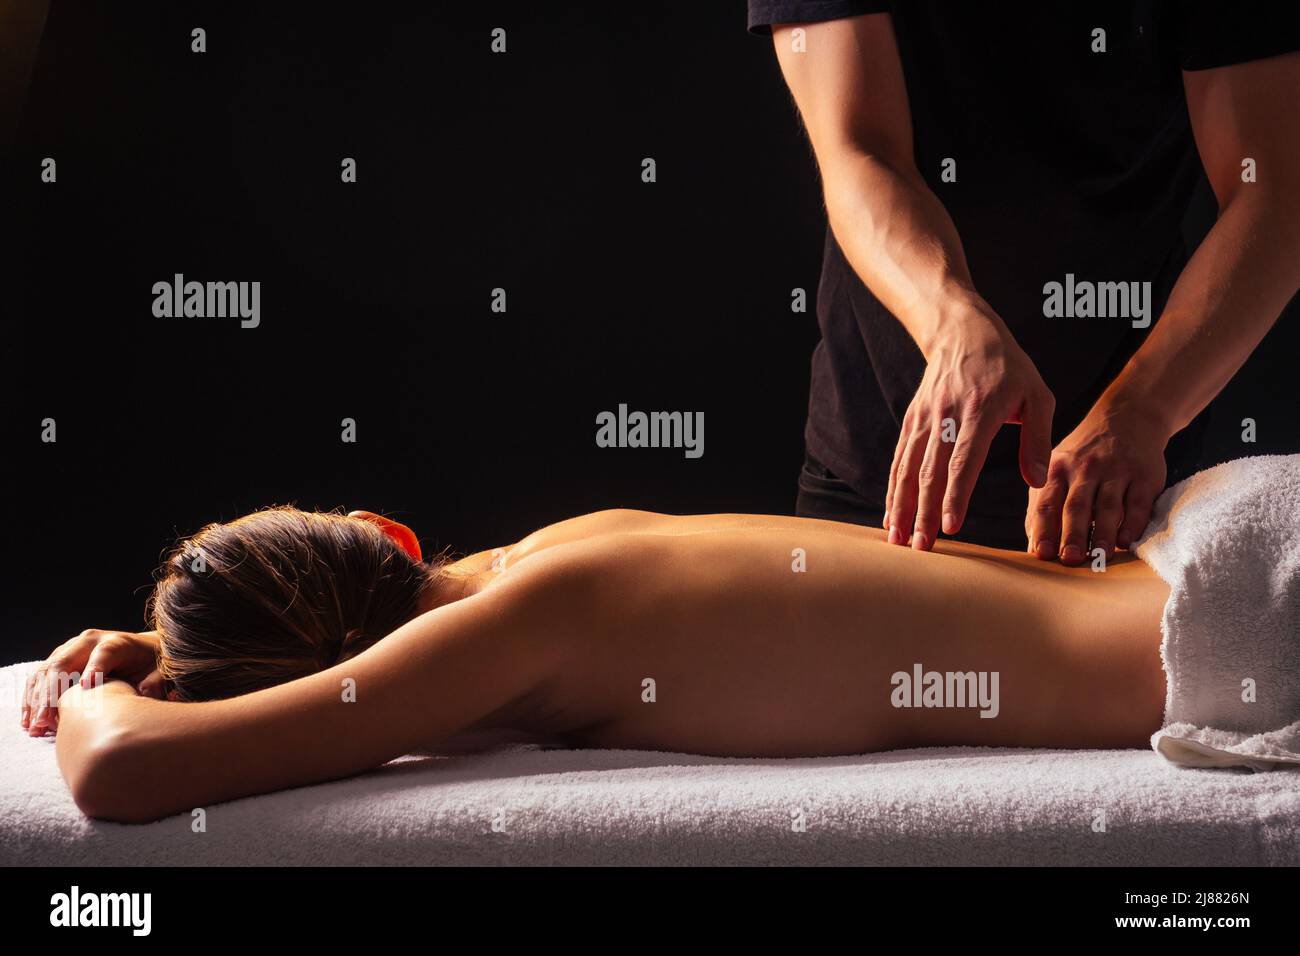 Masseuse mains faisant un massage du dos au client dans le centre de spa dans la pièce sombre Banque D'Images